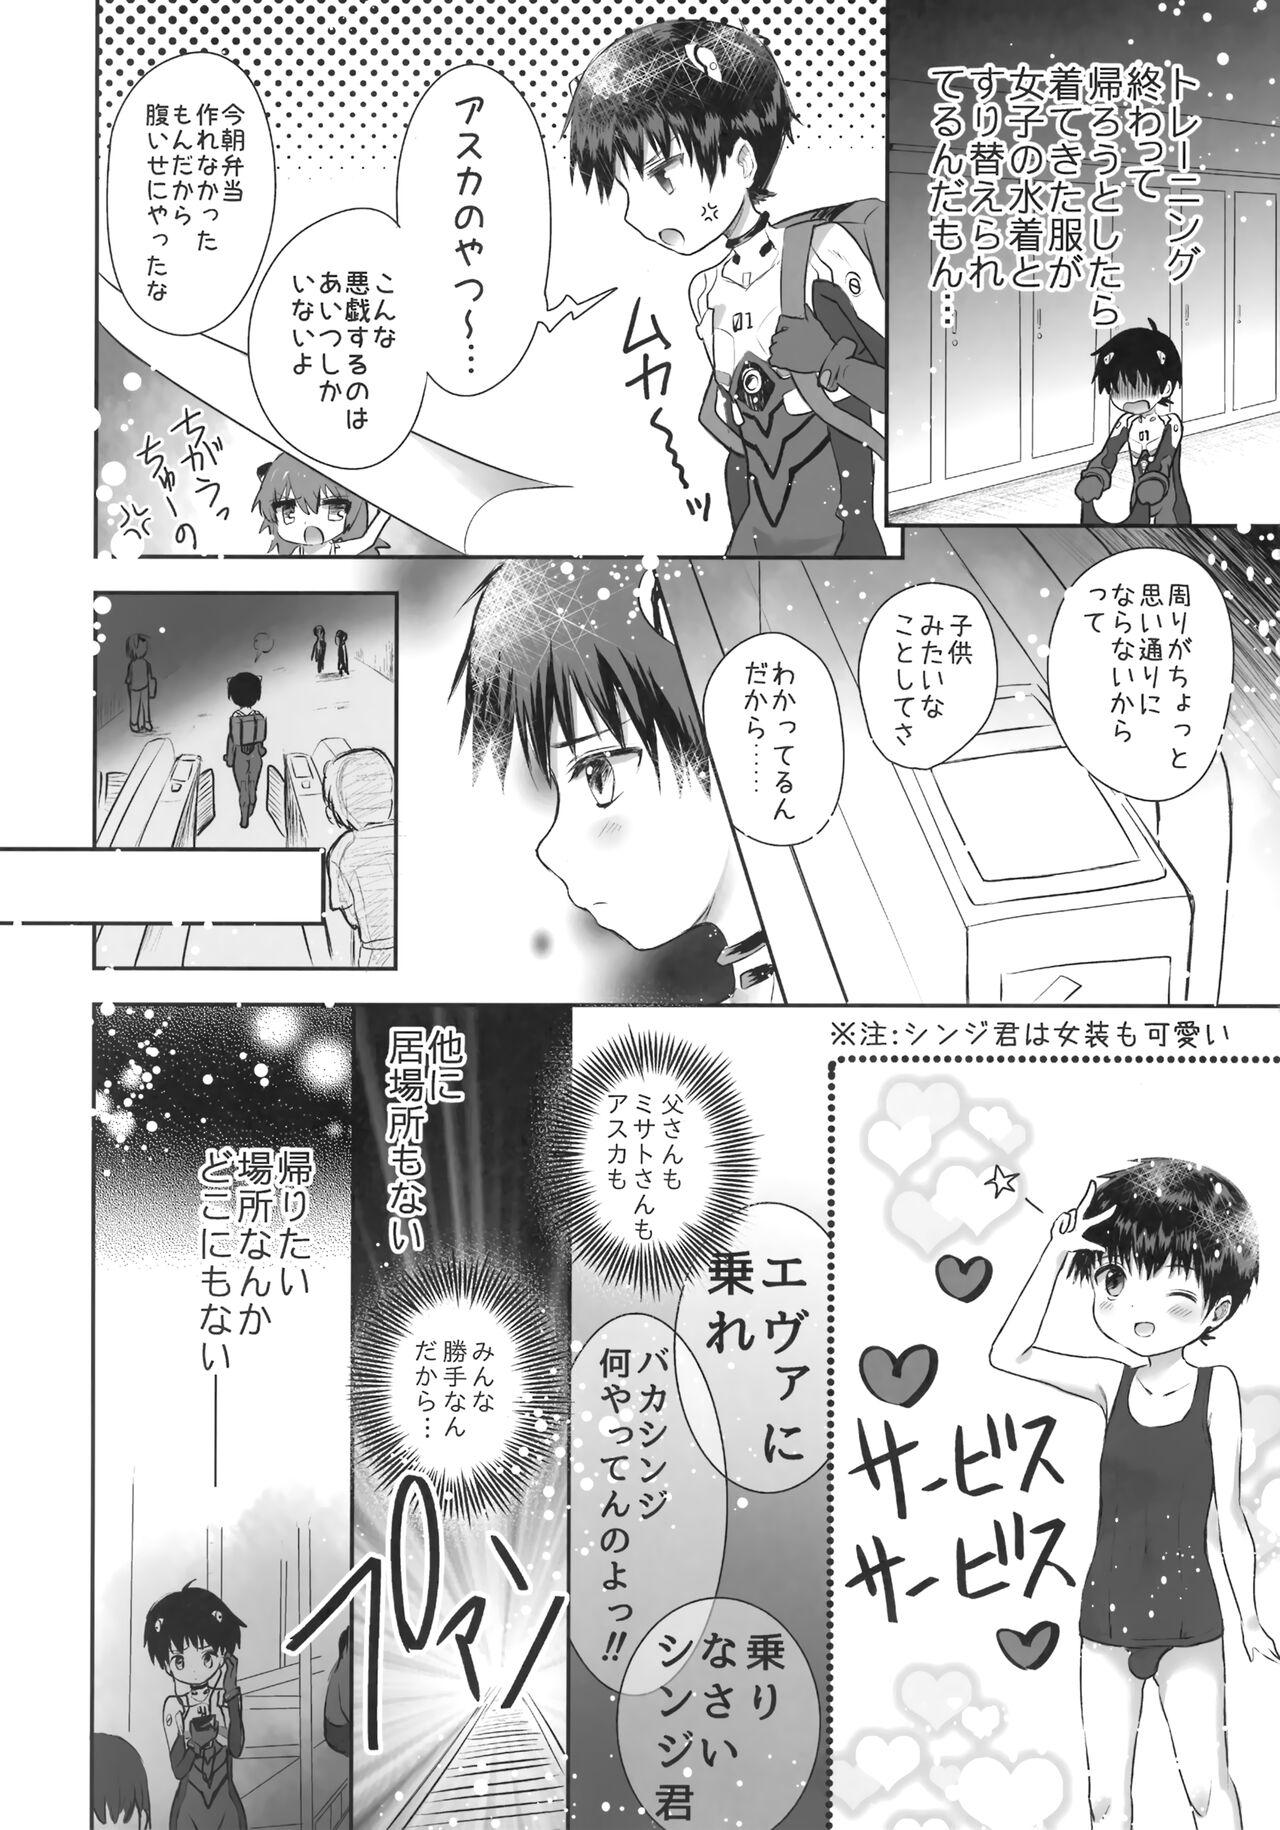 Hardsex Plugsuit o Kita Mama Notte Kure, Shinji. - Neon genesis evangelion Wam - Page 3